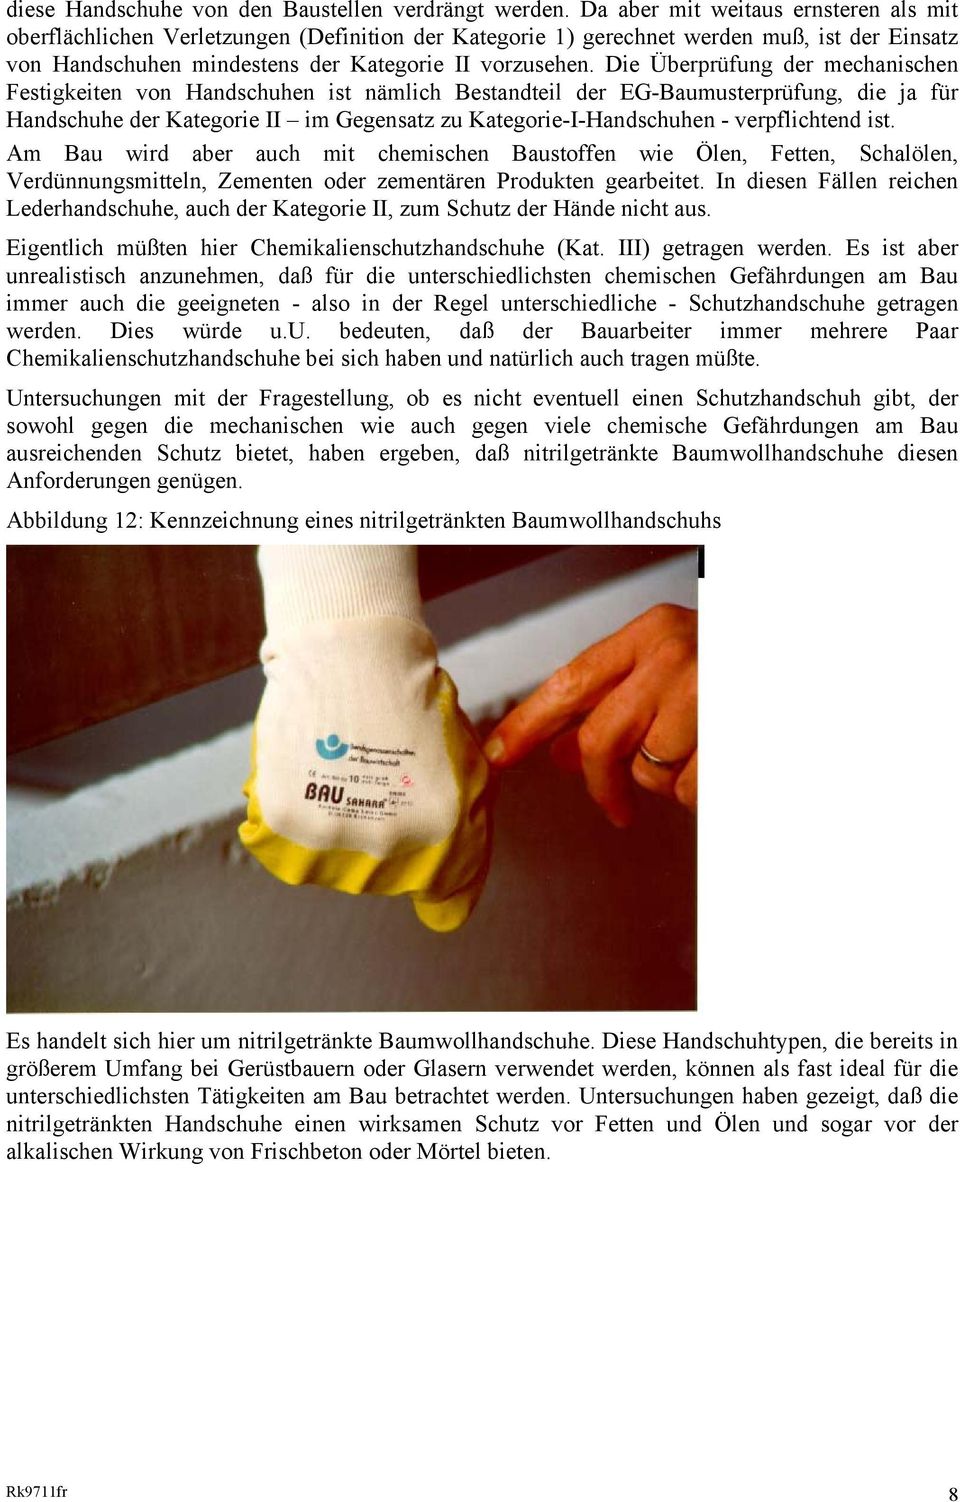 Die Überprüfung der mechanischen Festigkeiten von Handschuhen ist nämlich Bestandteil der EG-Baumusterprüfung, die ja für Handschuhe der Kategorie II im Gegensatz zu Kategorie-I-Handschuhen -